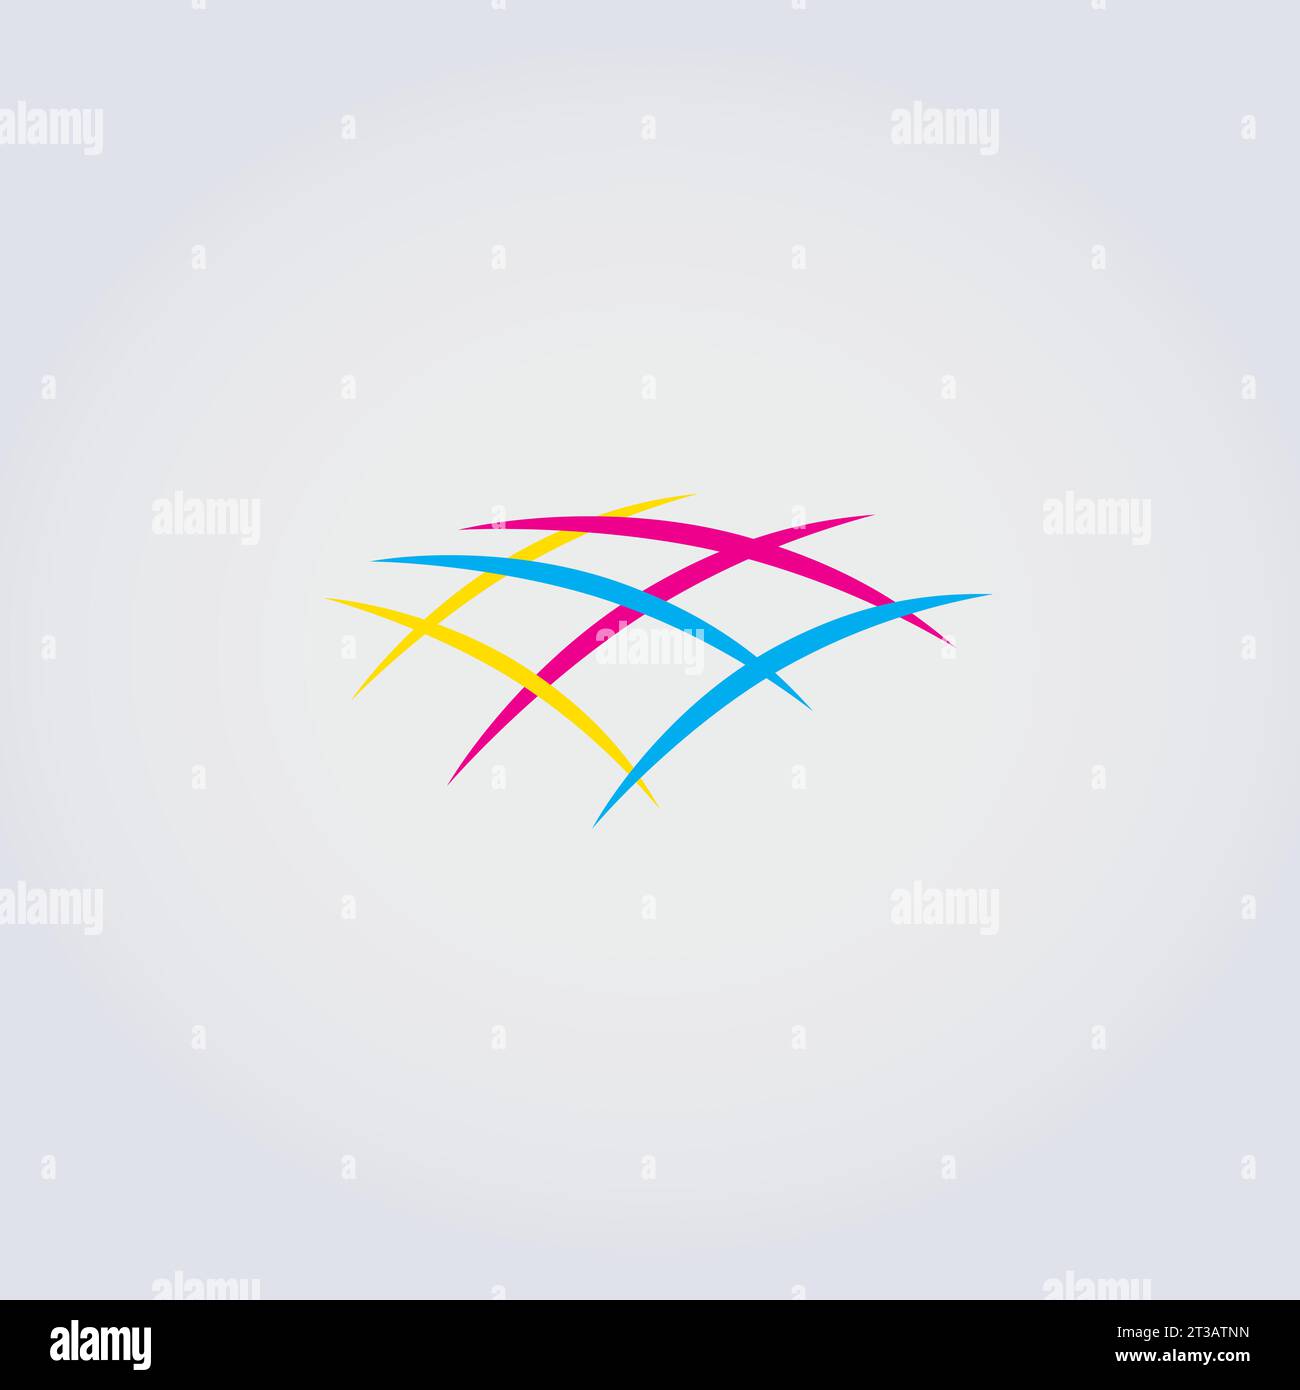 Icona astratta Logo Design comunicazioni varie dialogo parla rete colori primari vettore Illustrazione Vettoriale